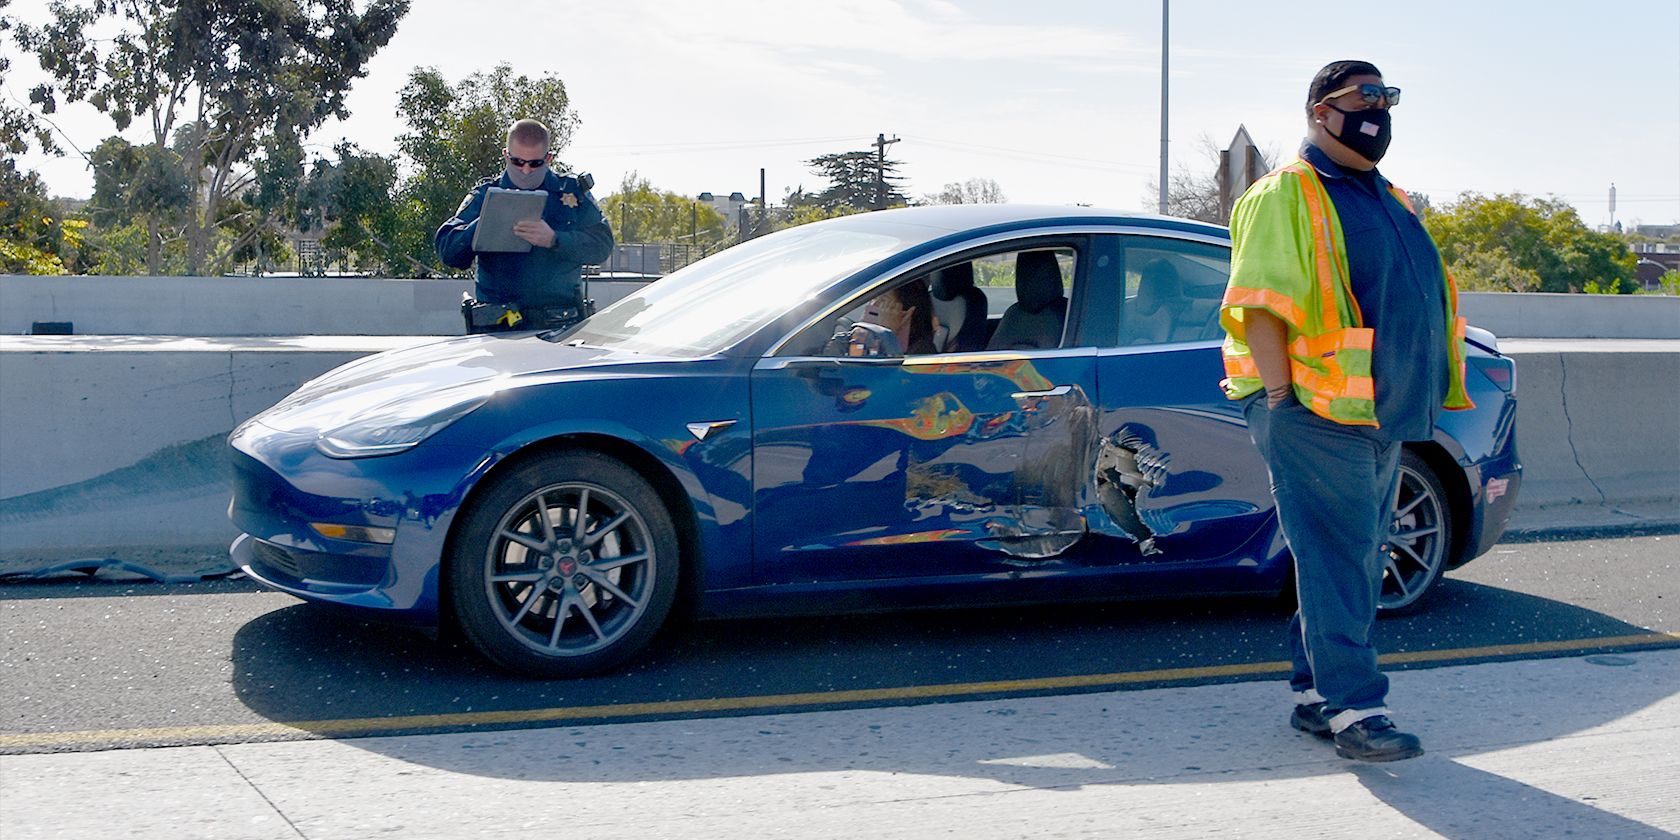 Crashed Tesla with Police Officer taking details